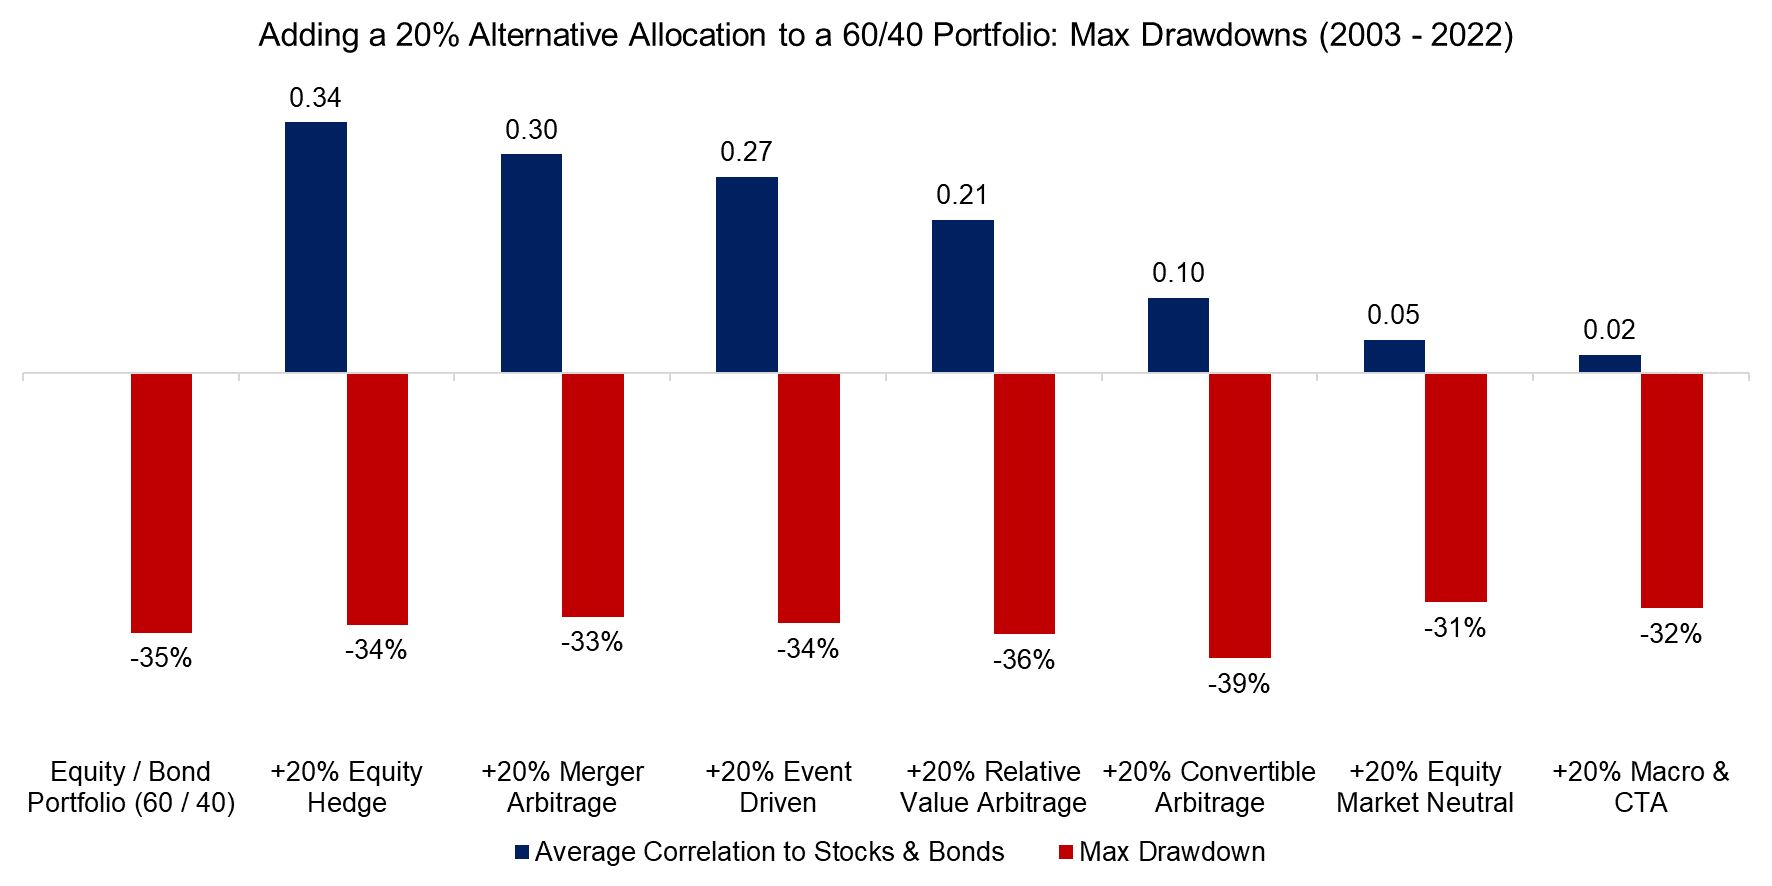 Adding a 20% Alternative Allocation to a 6040 Portfolio Max Drawdowns (2003 - 2022)